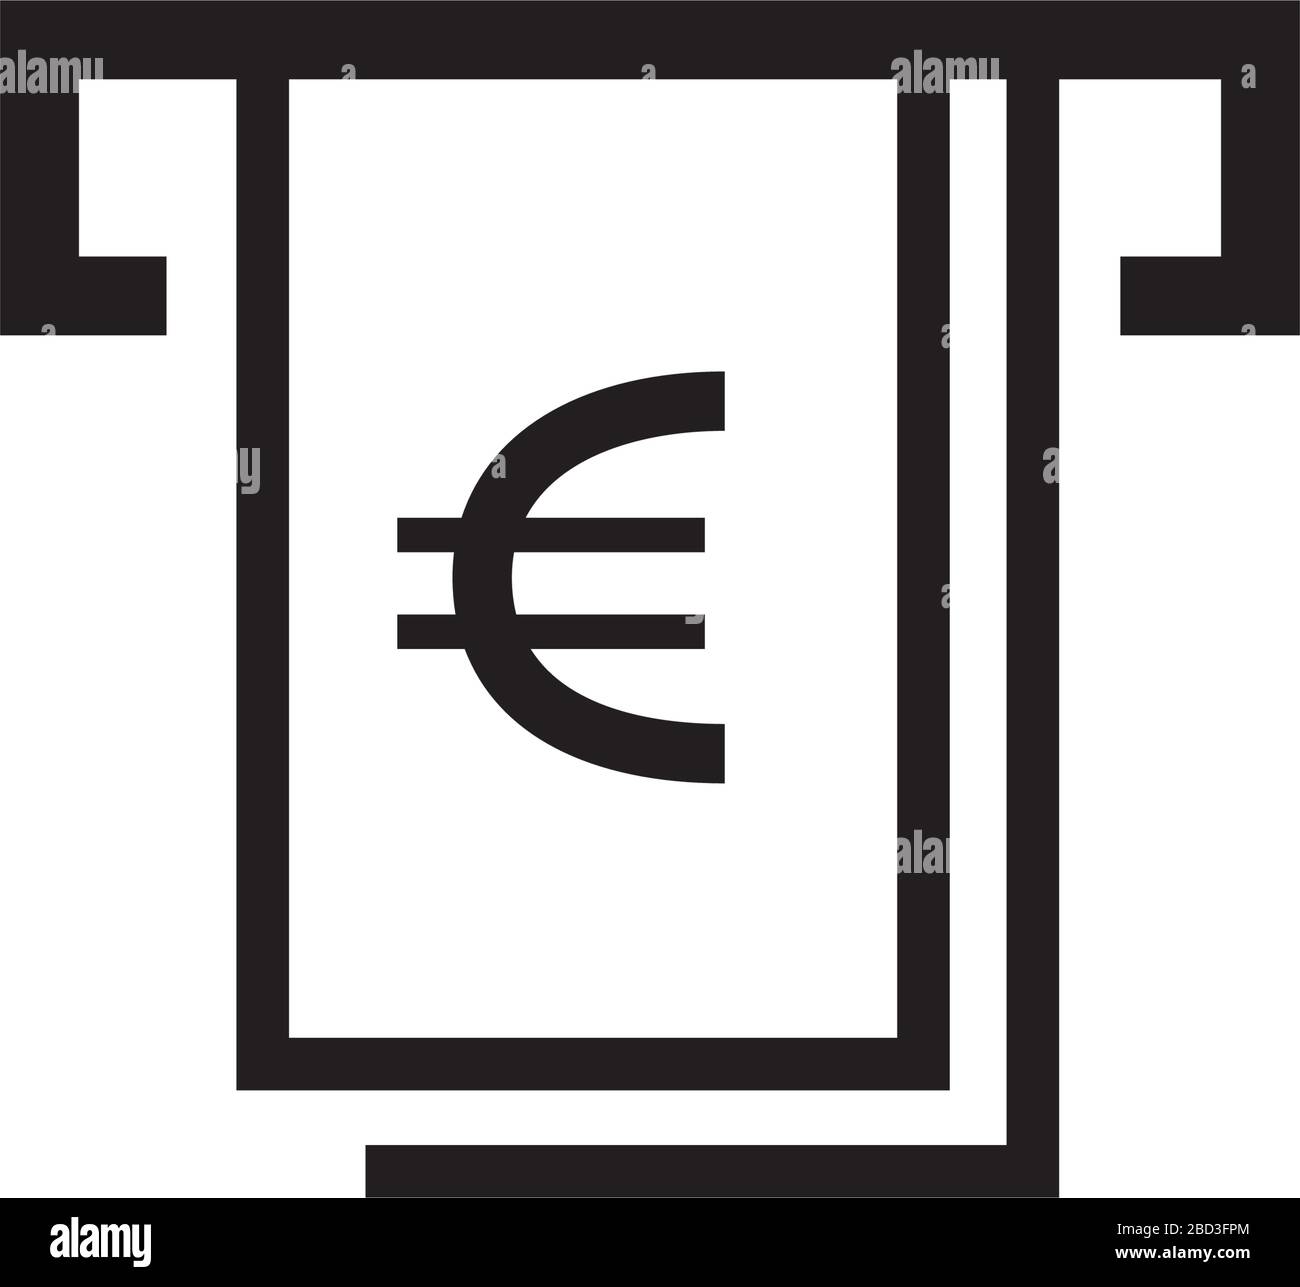 ATM, cash dispenser icon (euro) Stock Vector